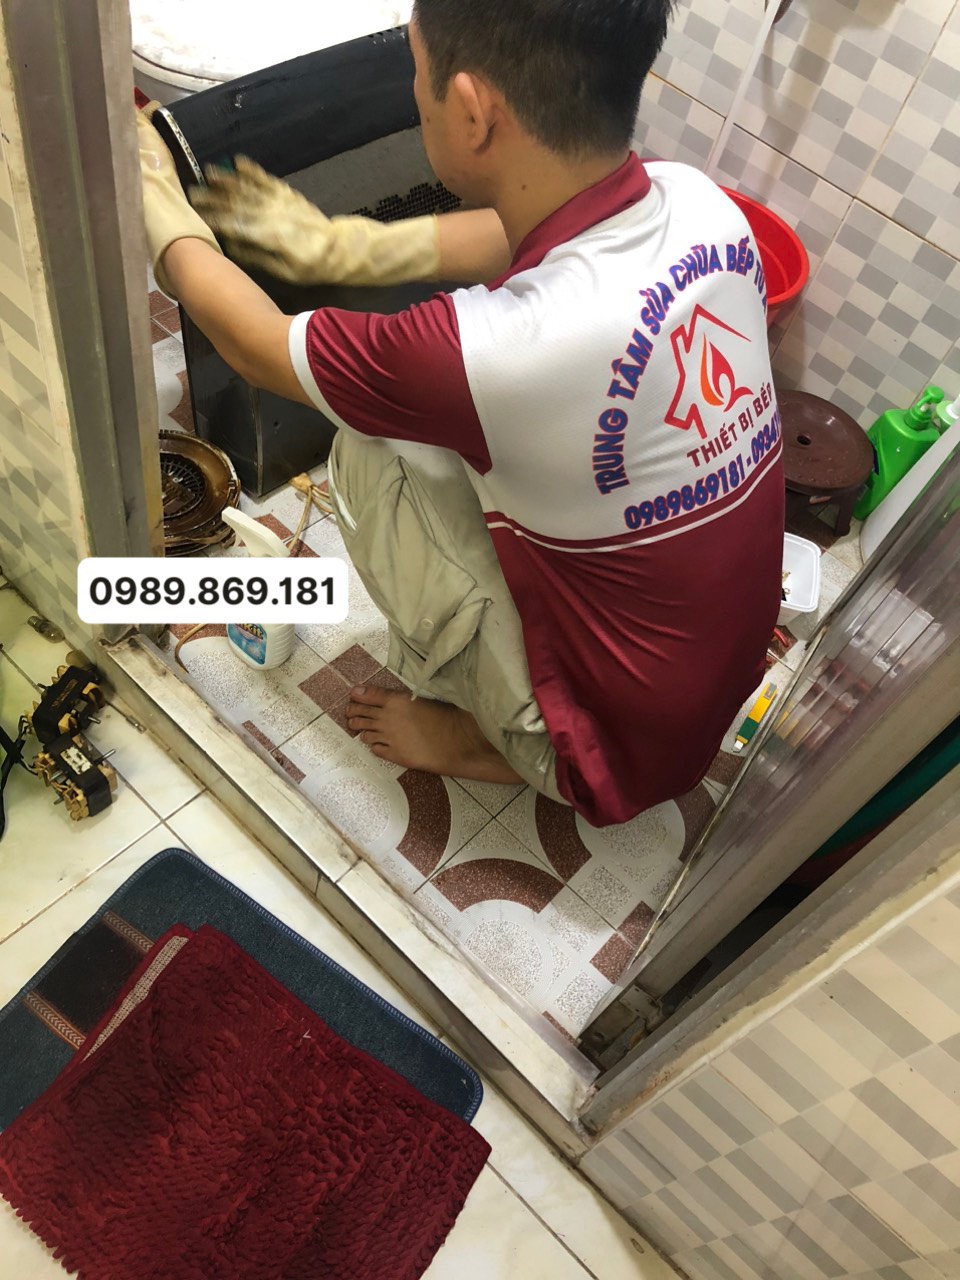 z4505014183154 a64dde63ad61dad7a5b197cc139738b0 - Dịch vụ vệ sinh máy hút mùi bếp uy tín tại Sài Gòn- suachuanhabep